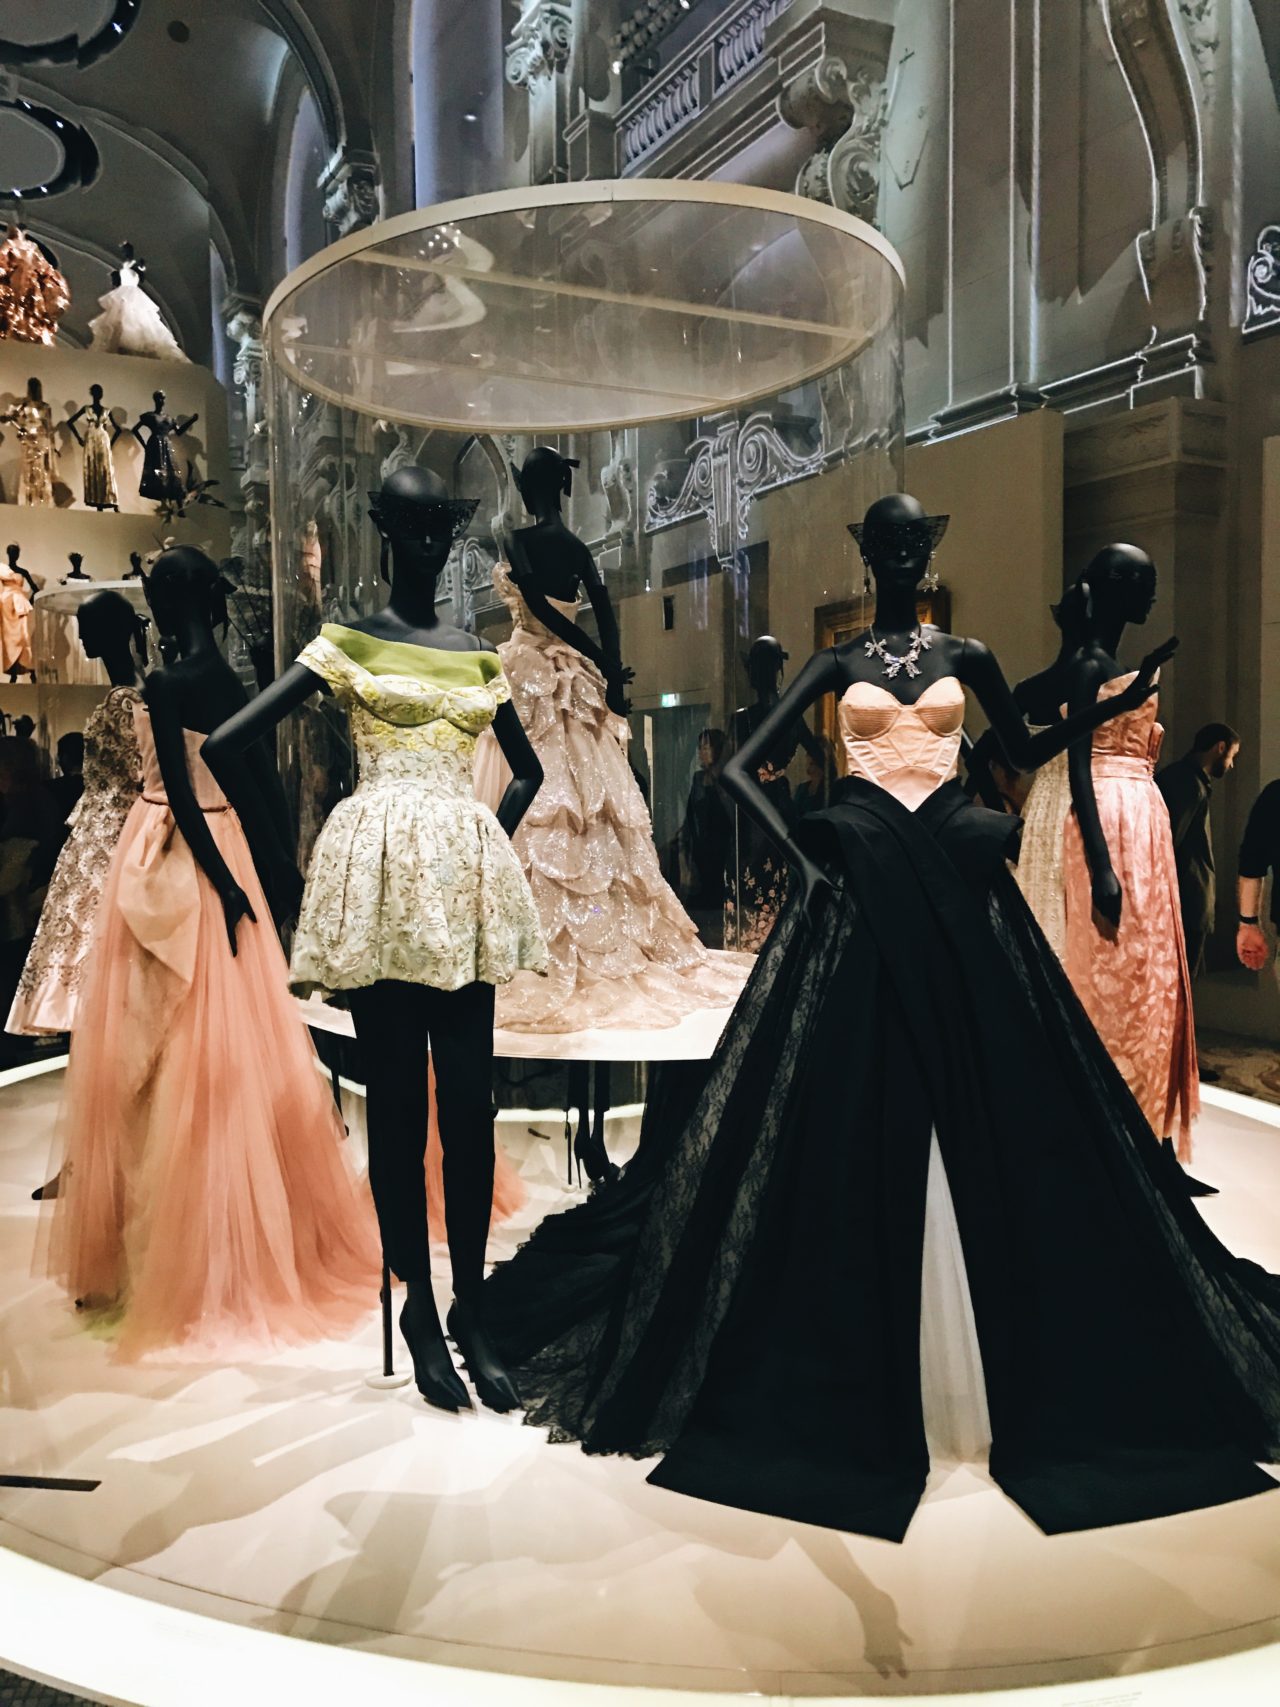 Dior Dress Exhibit in Paris City guide